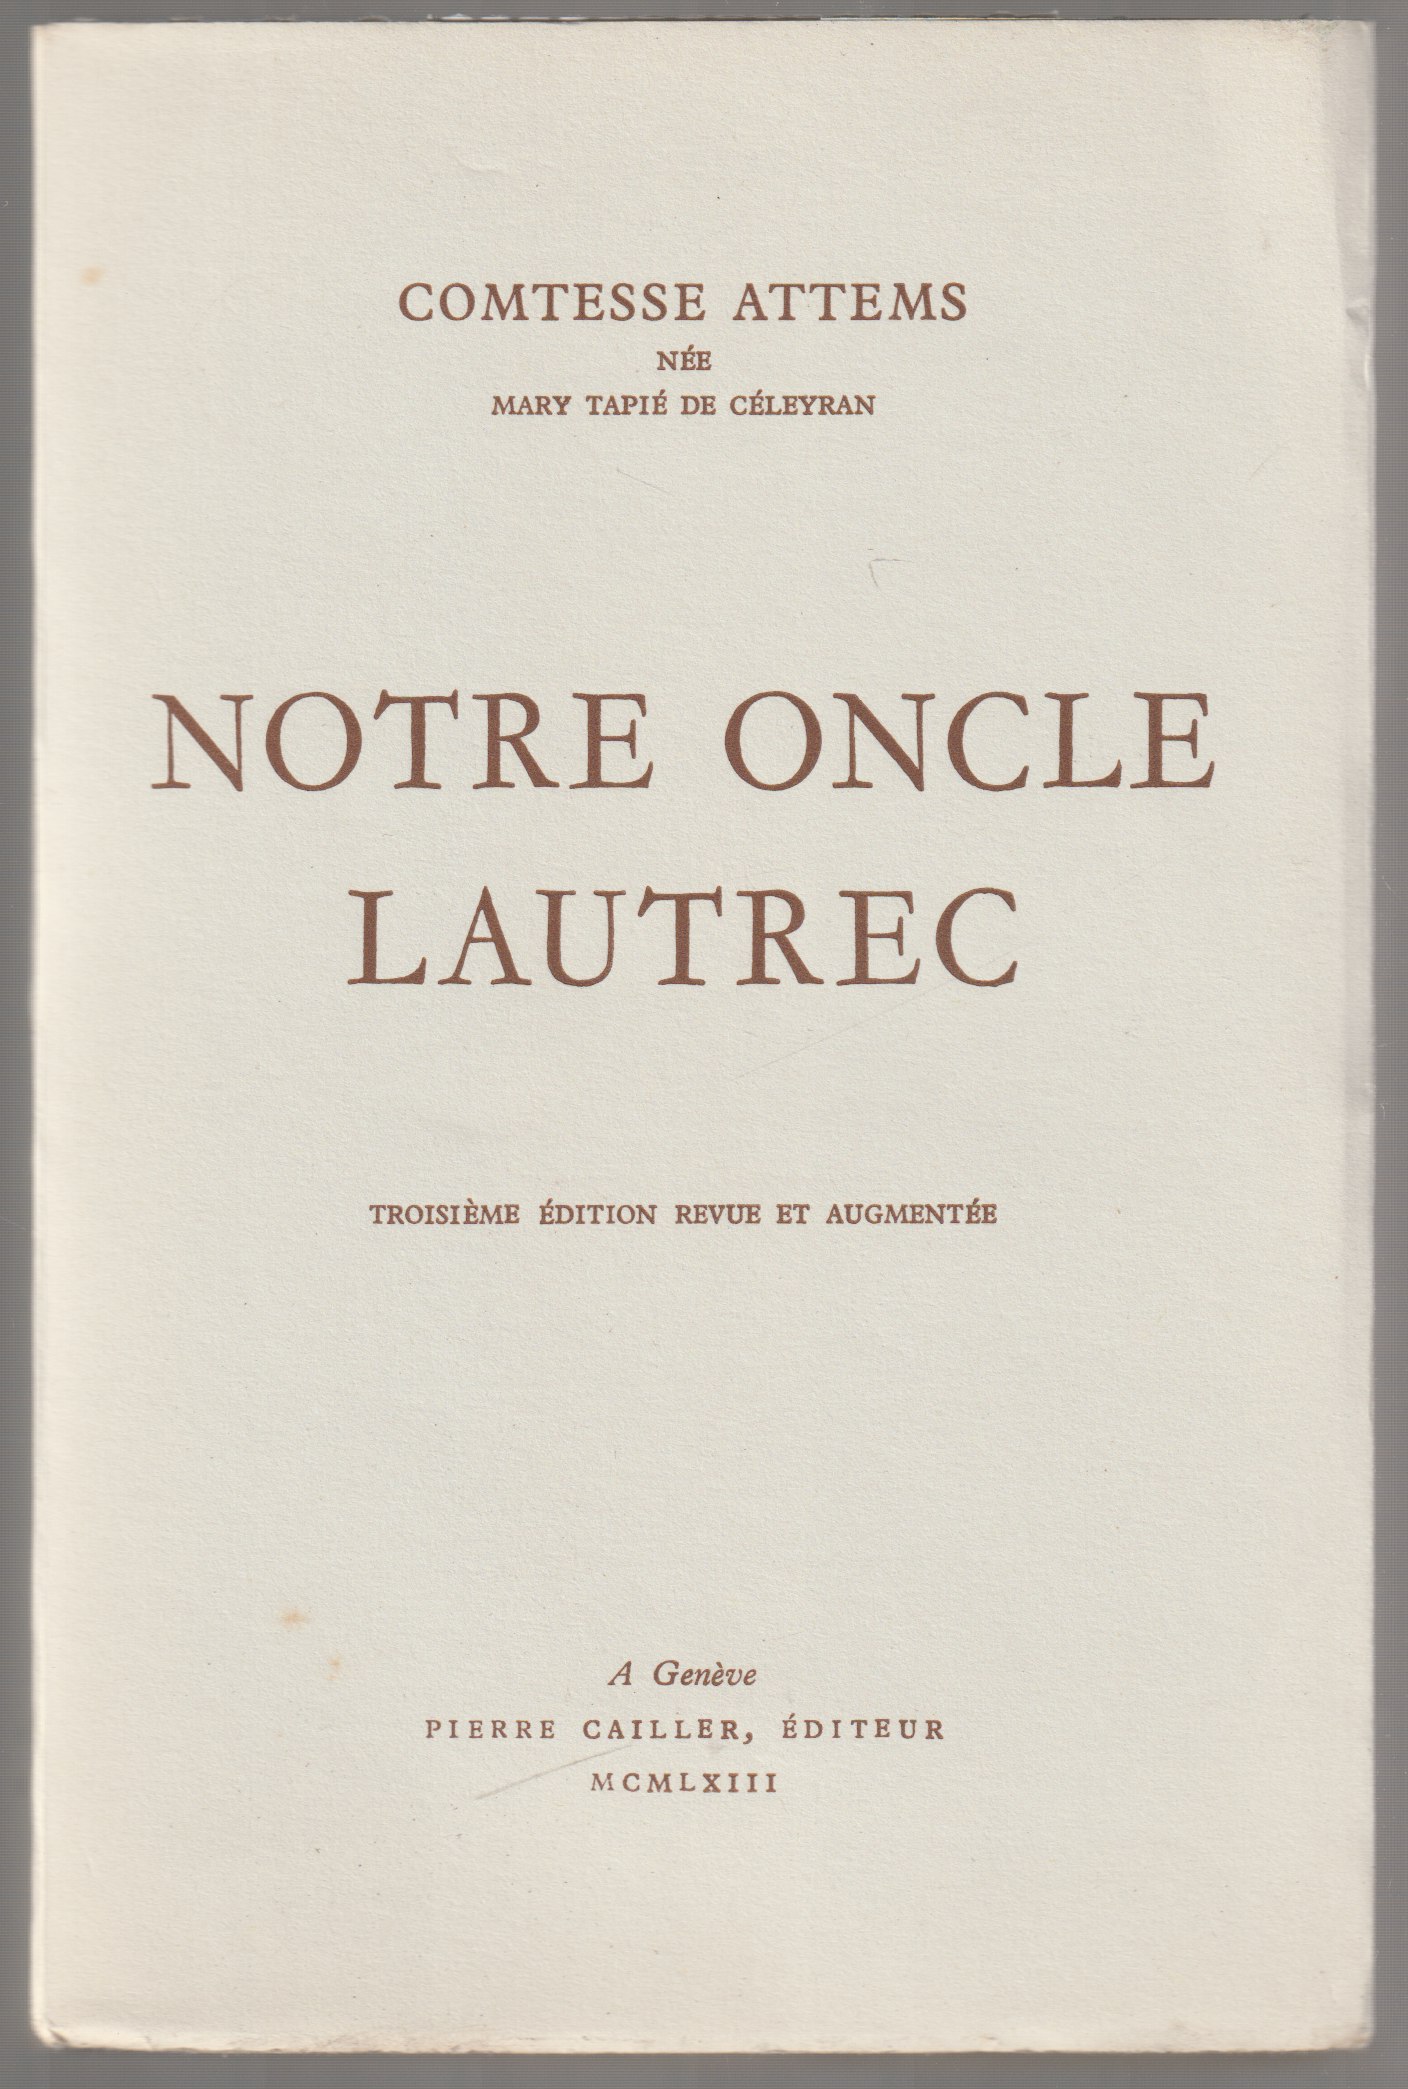 Notre oncle Lautrec.